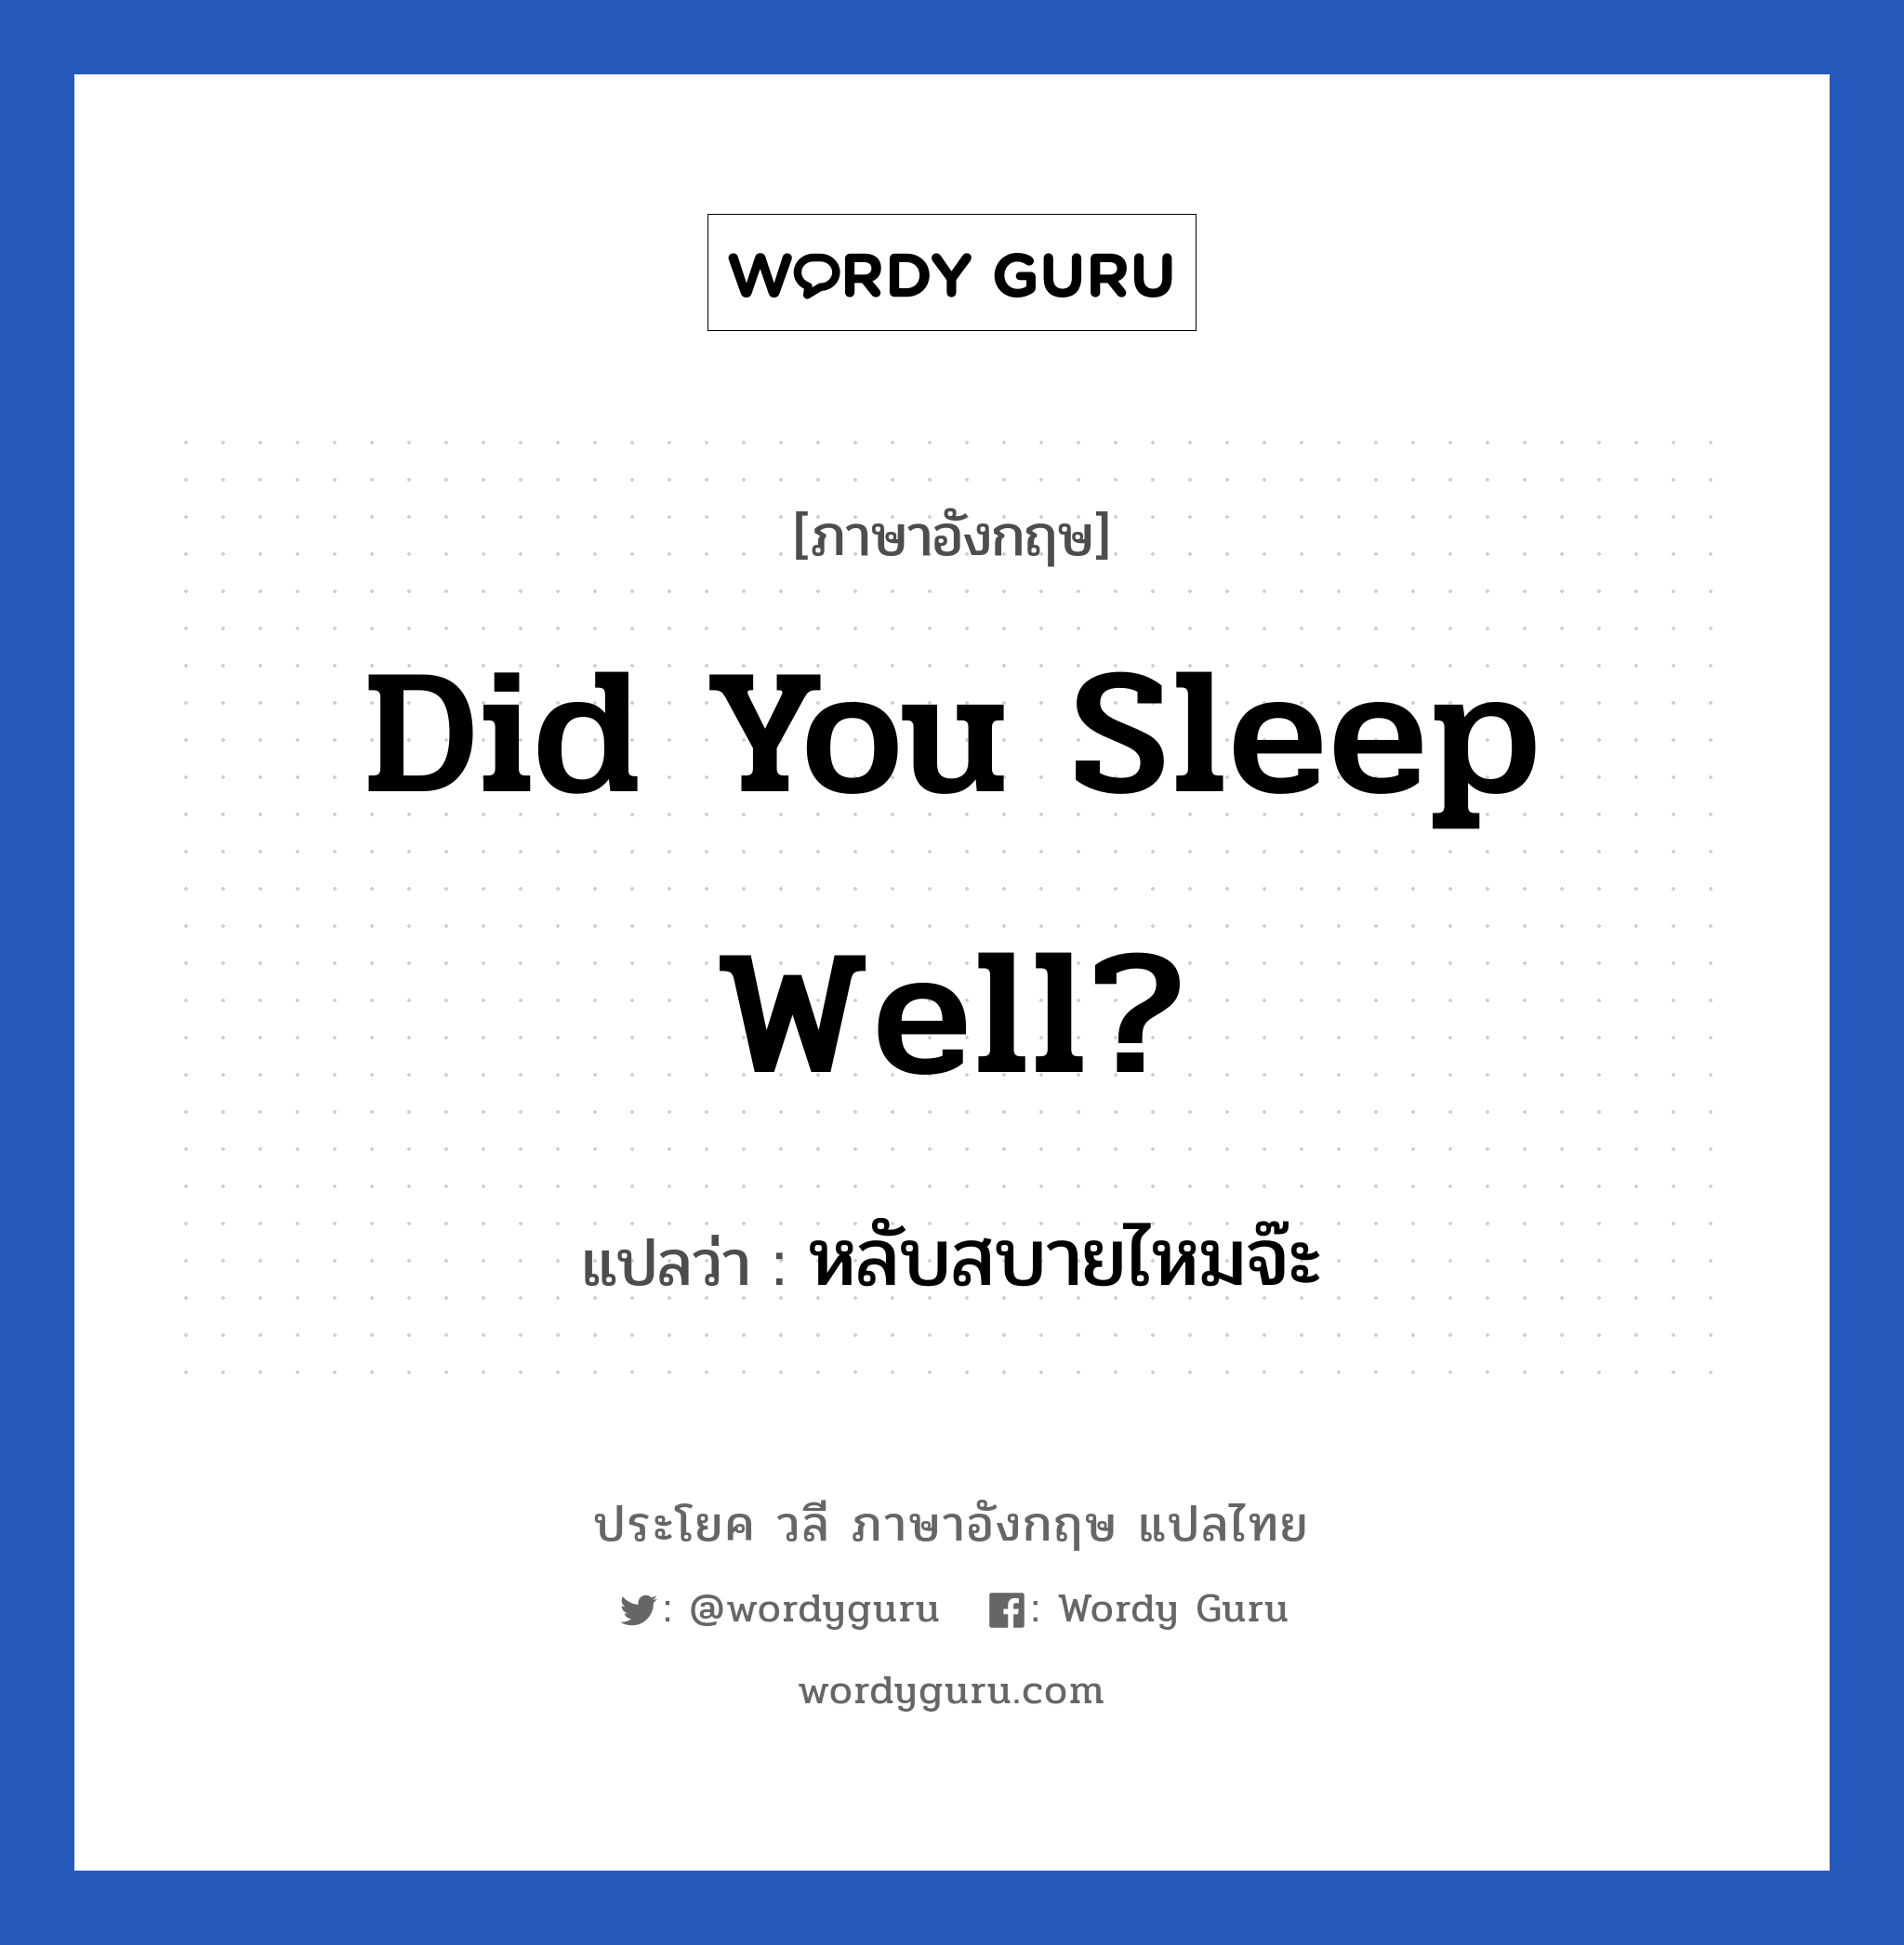 หลับสบายไหมจ๊ะ ภาษาอังกฤษ?, วลีภาษาอังกฤษ หลับสบายไหมจ๊ะ แปลว่า Did you sleep well?